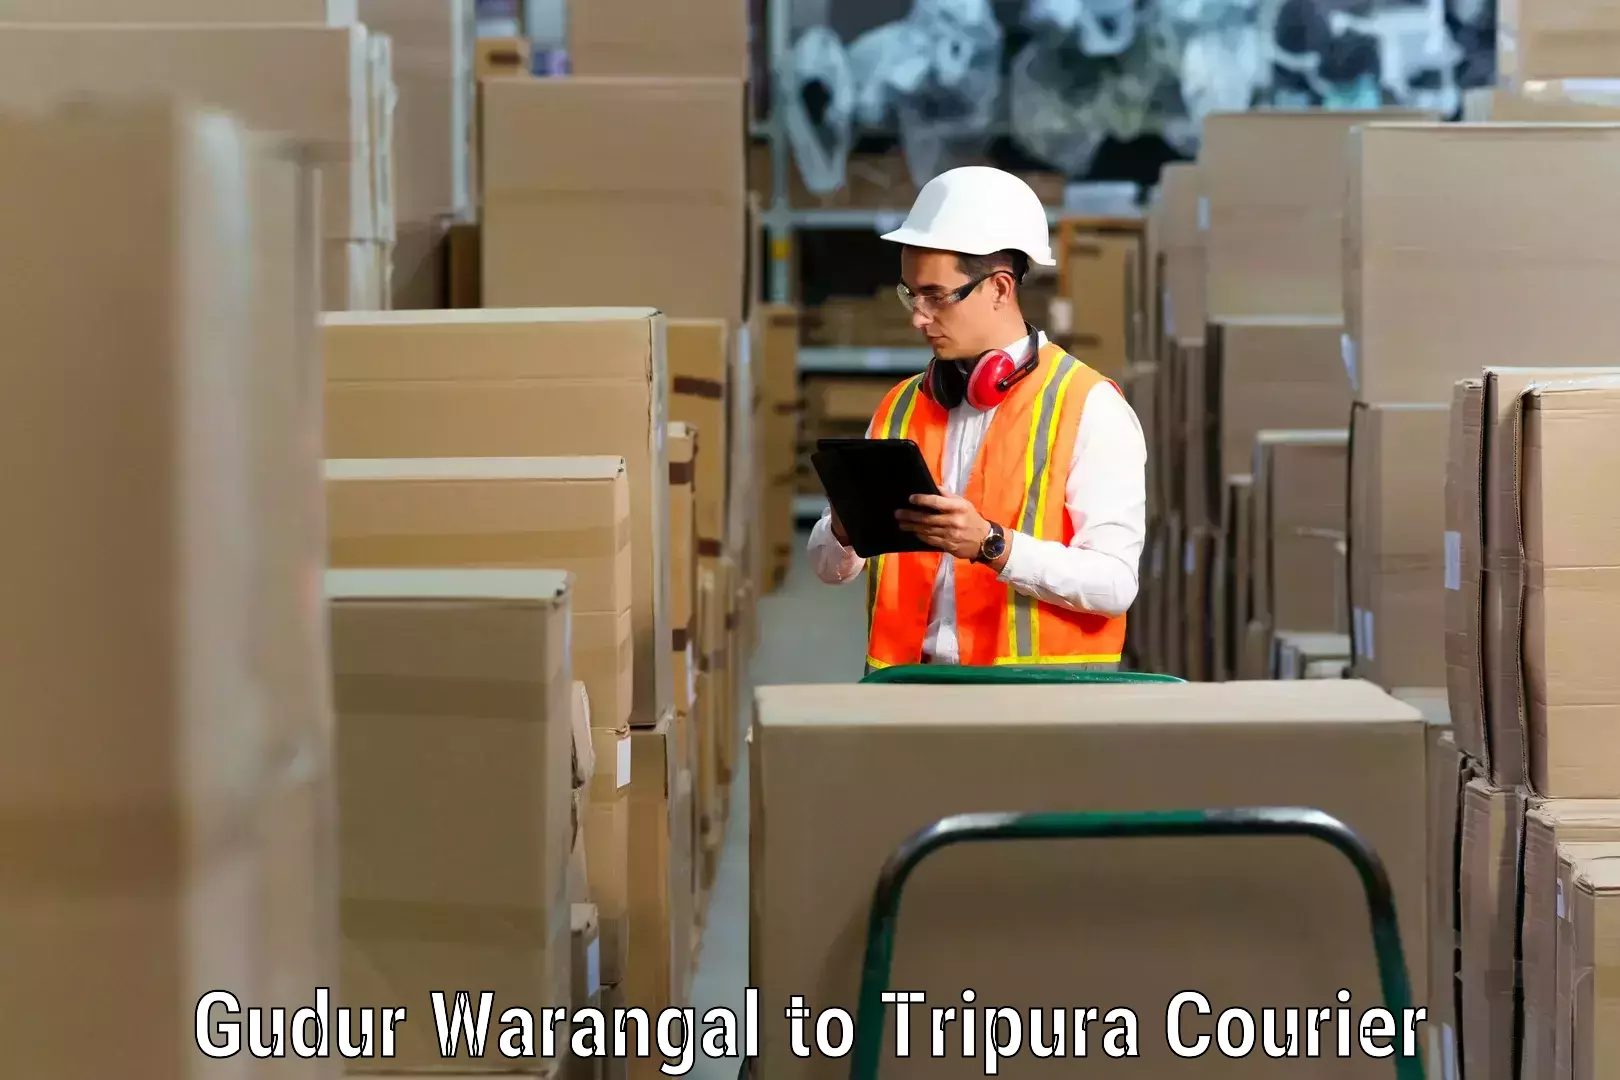 Furniture transport experts Gudur Warangal to Dharmanagar